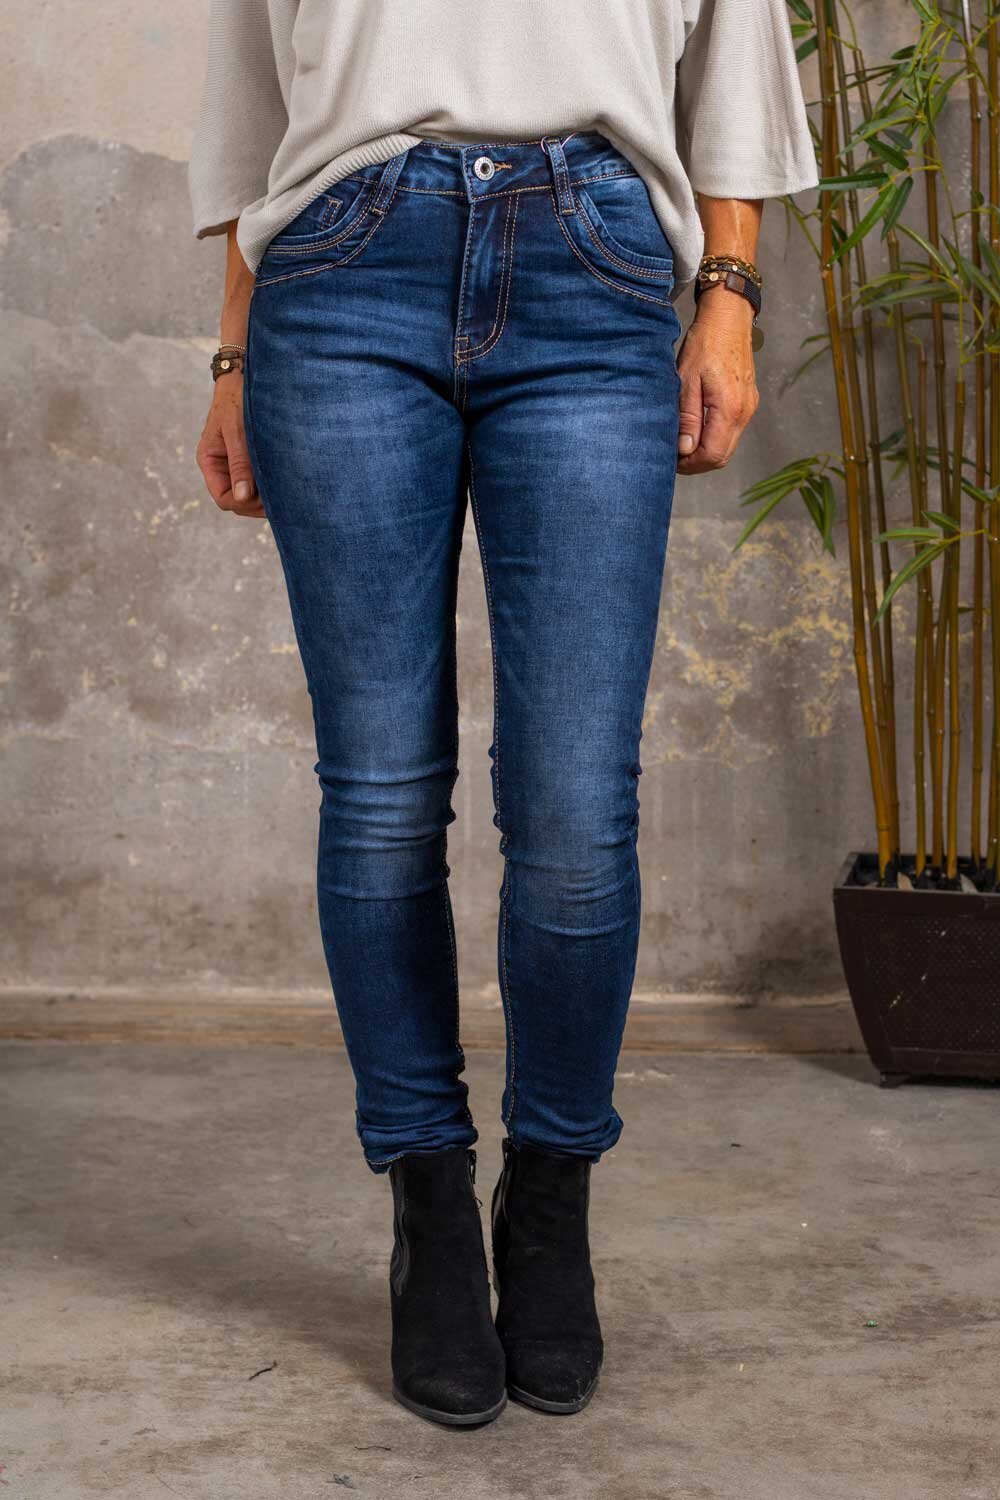 Jeans JW1025A - Denim